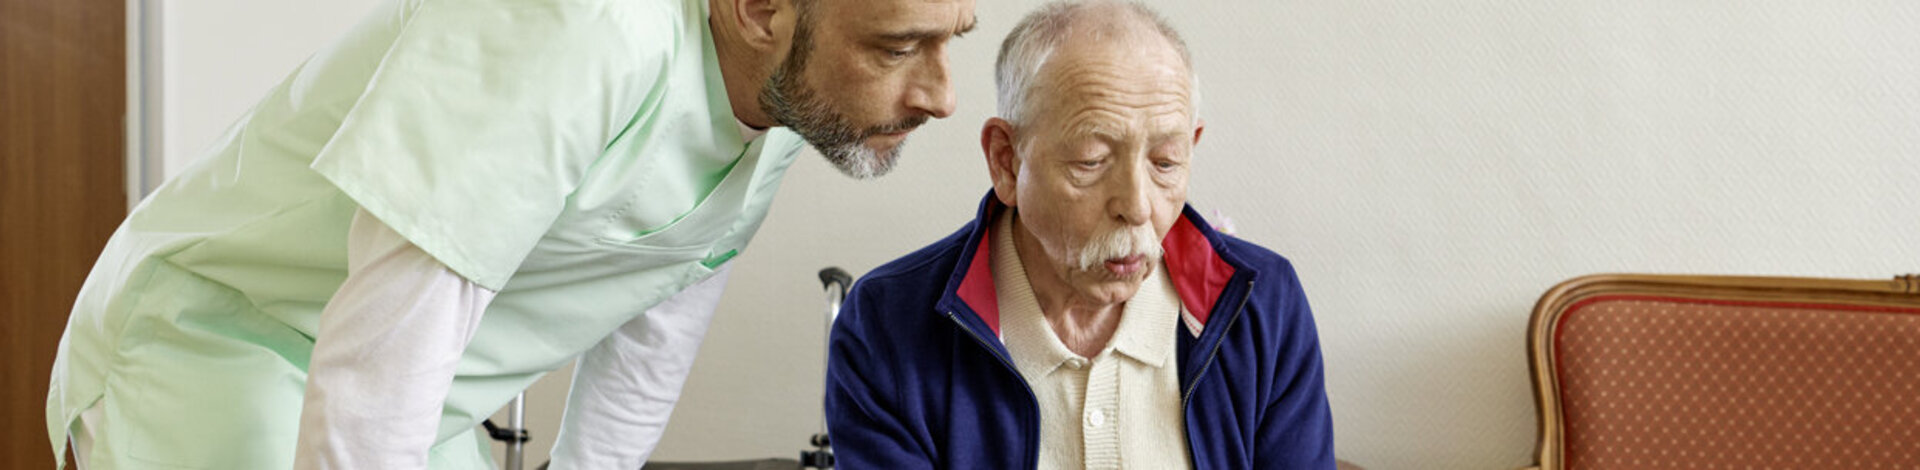 Eine Pflegekraft hilft einem älteren Mann im Altersheim beim Ausfüllen eines Formulares.